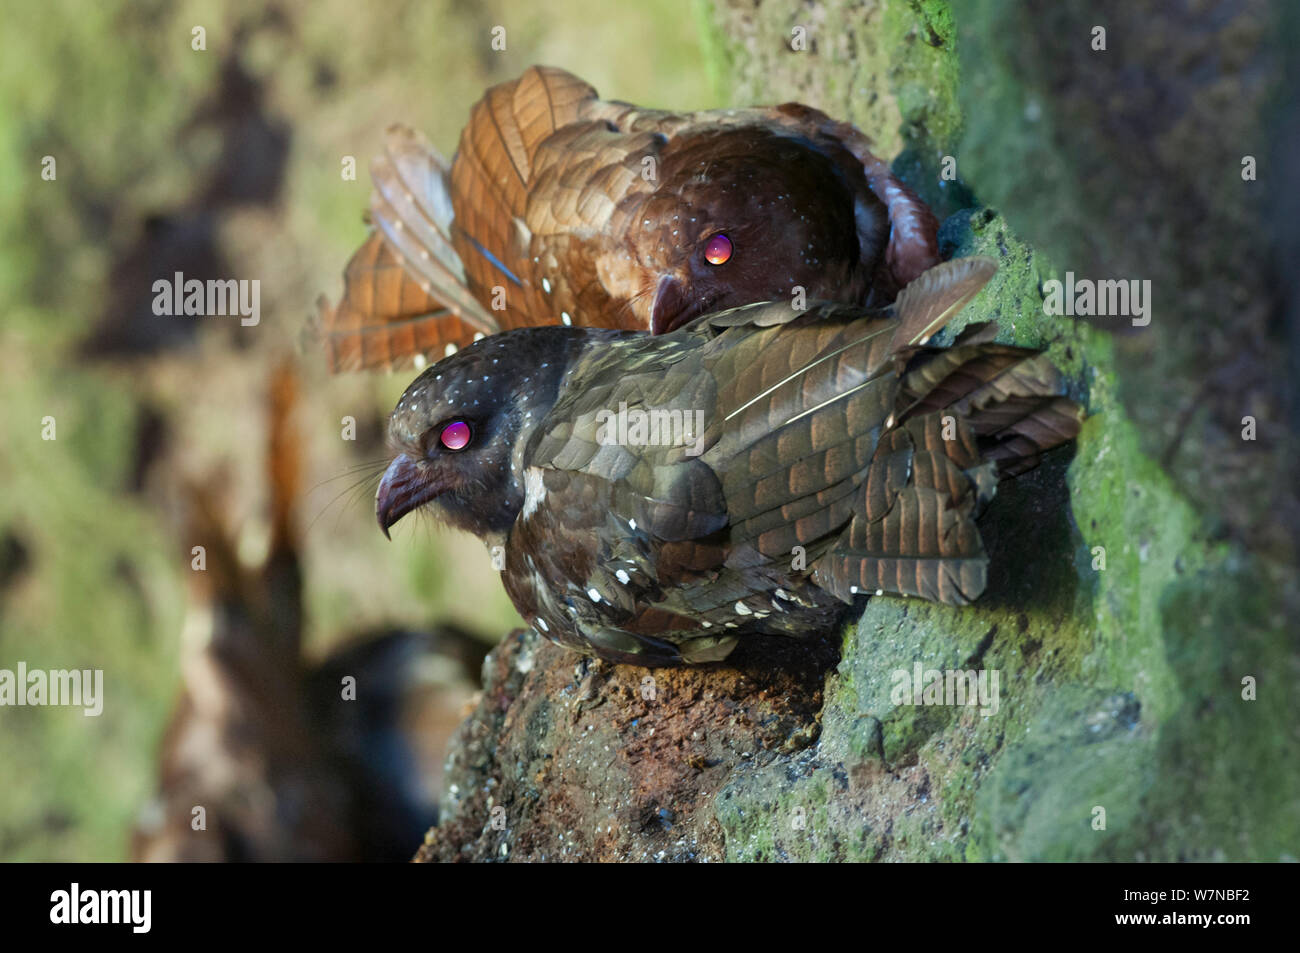 Oilbird (Steatornis caripensis) nachtaktive Vögel Nester und nisten in Wänden entlang der tiefen, engen Schlucht in Ackerland, tandayapa Tal, 1500 m Höhe, Ecuador Stockfoto